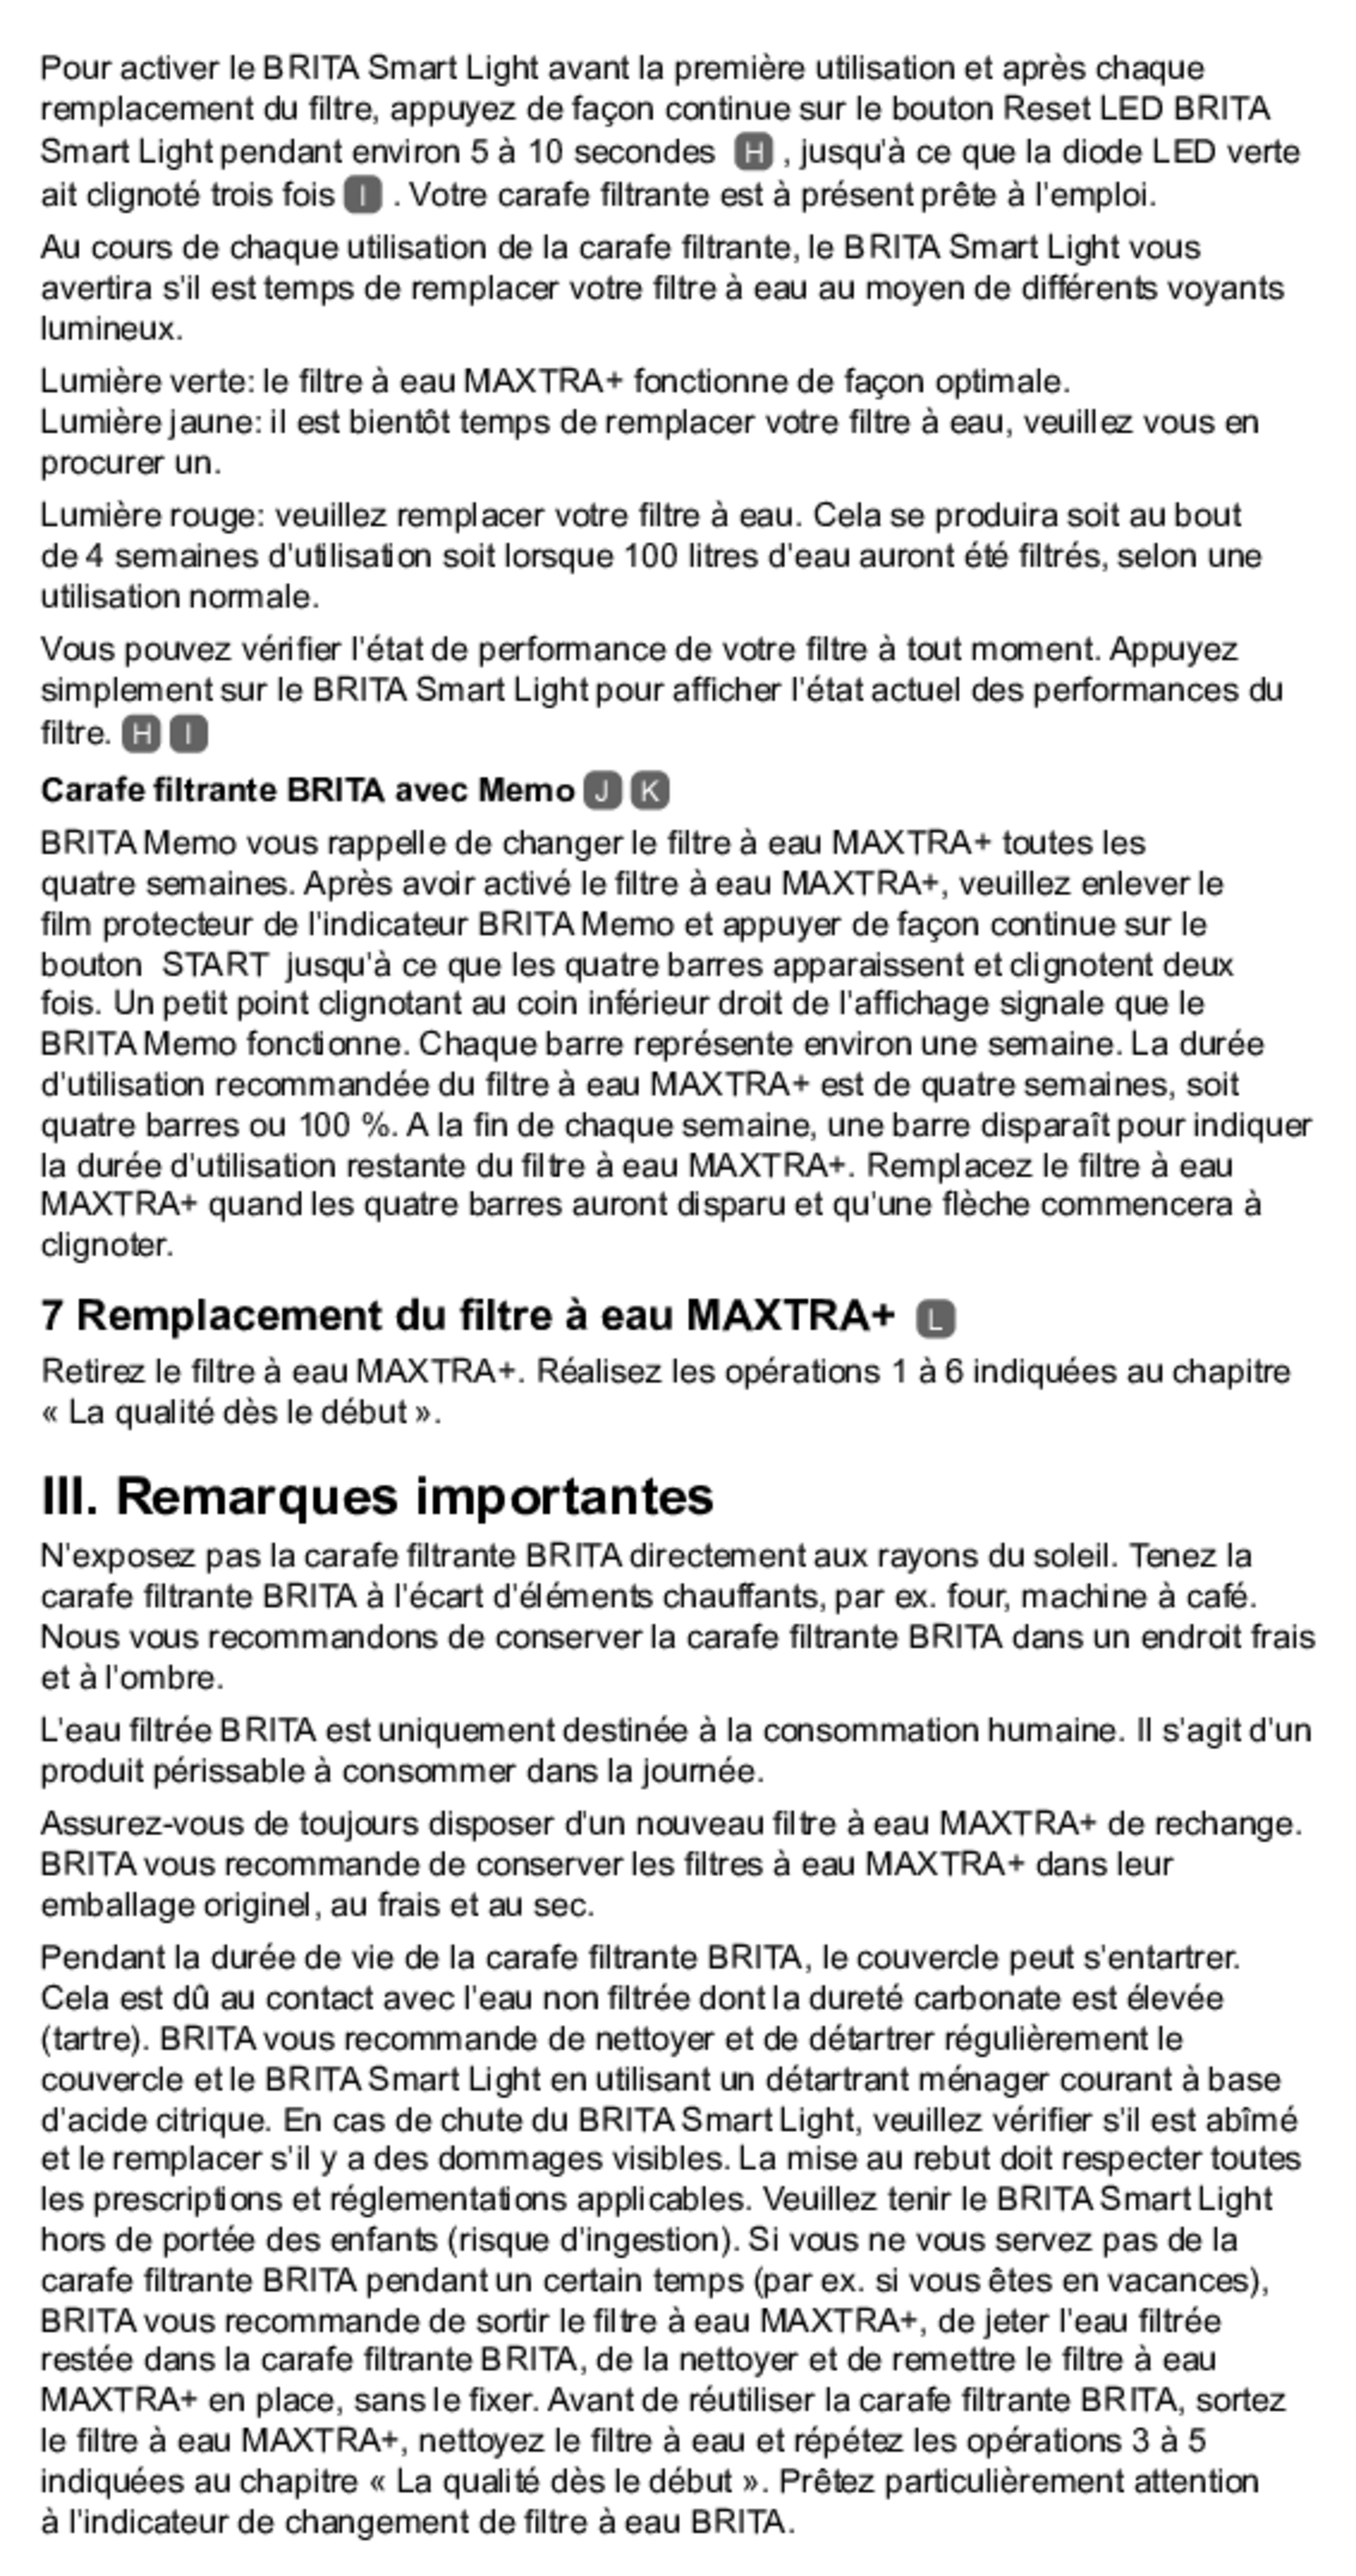 Marella Waterfilterkan Wit + 2 Maxtra Filterpatronen afbeelding van document #11, gebruiksaanwijzing